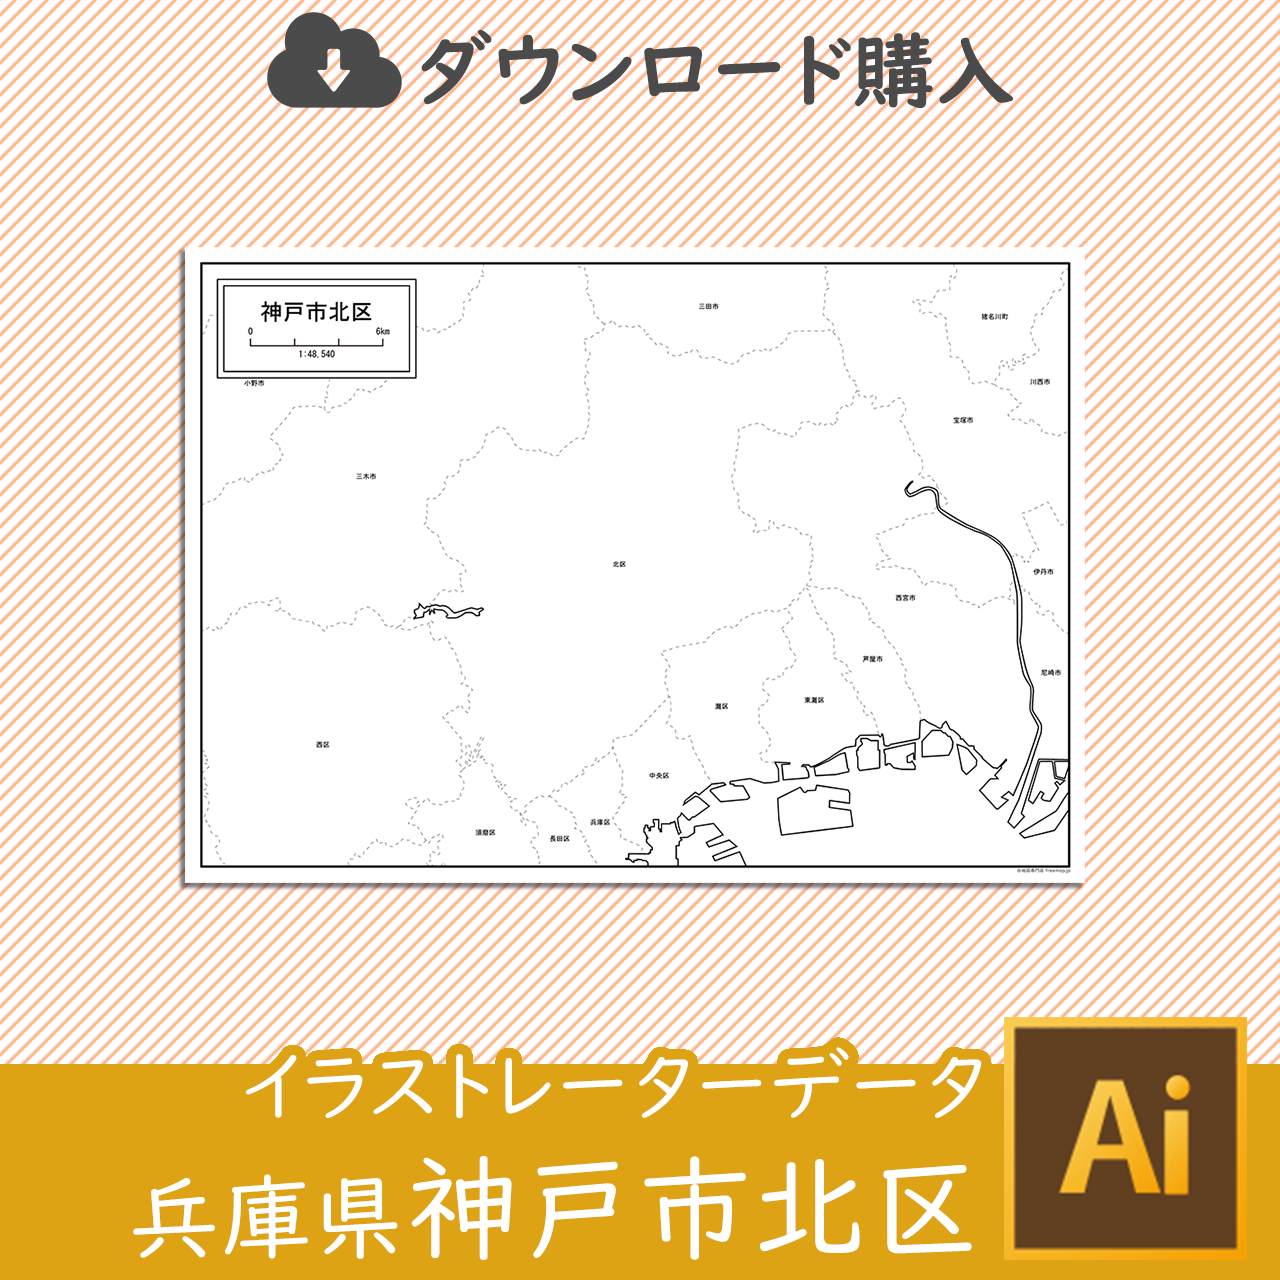 神戸市北区のaiデータのサムネイル画像